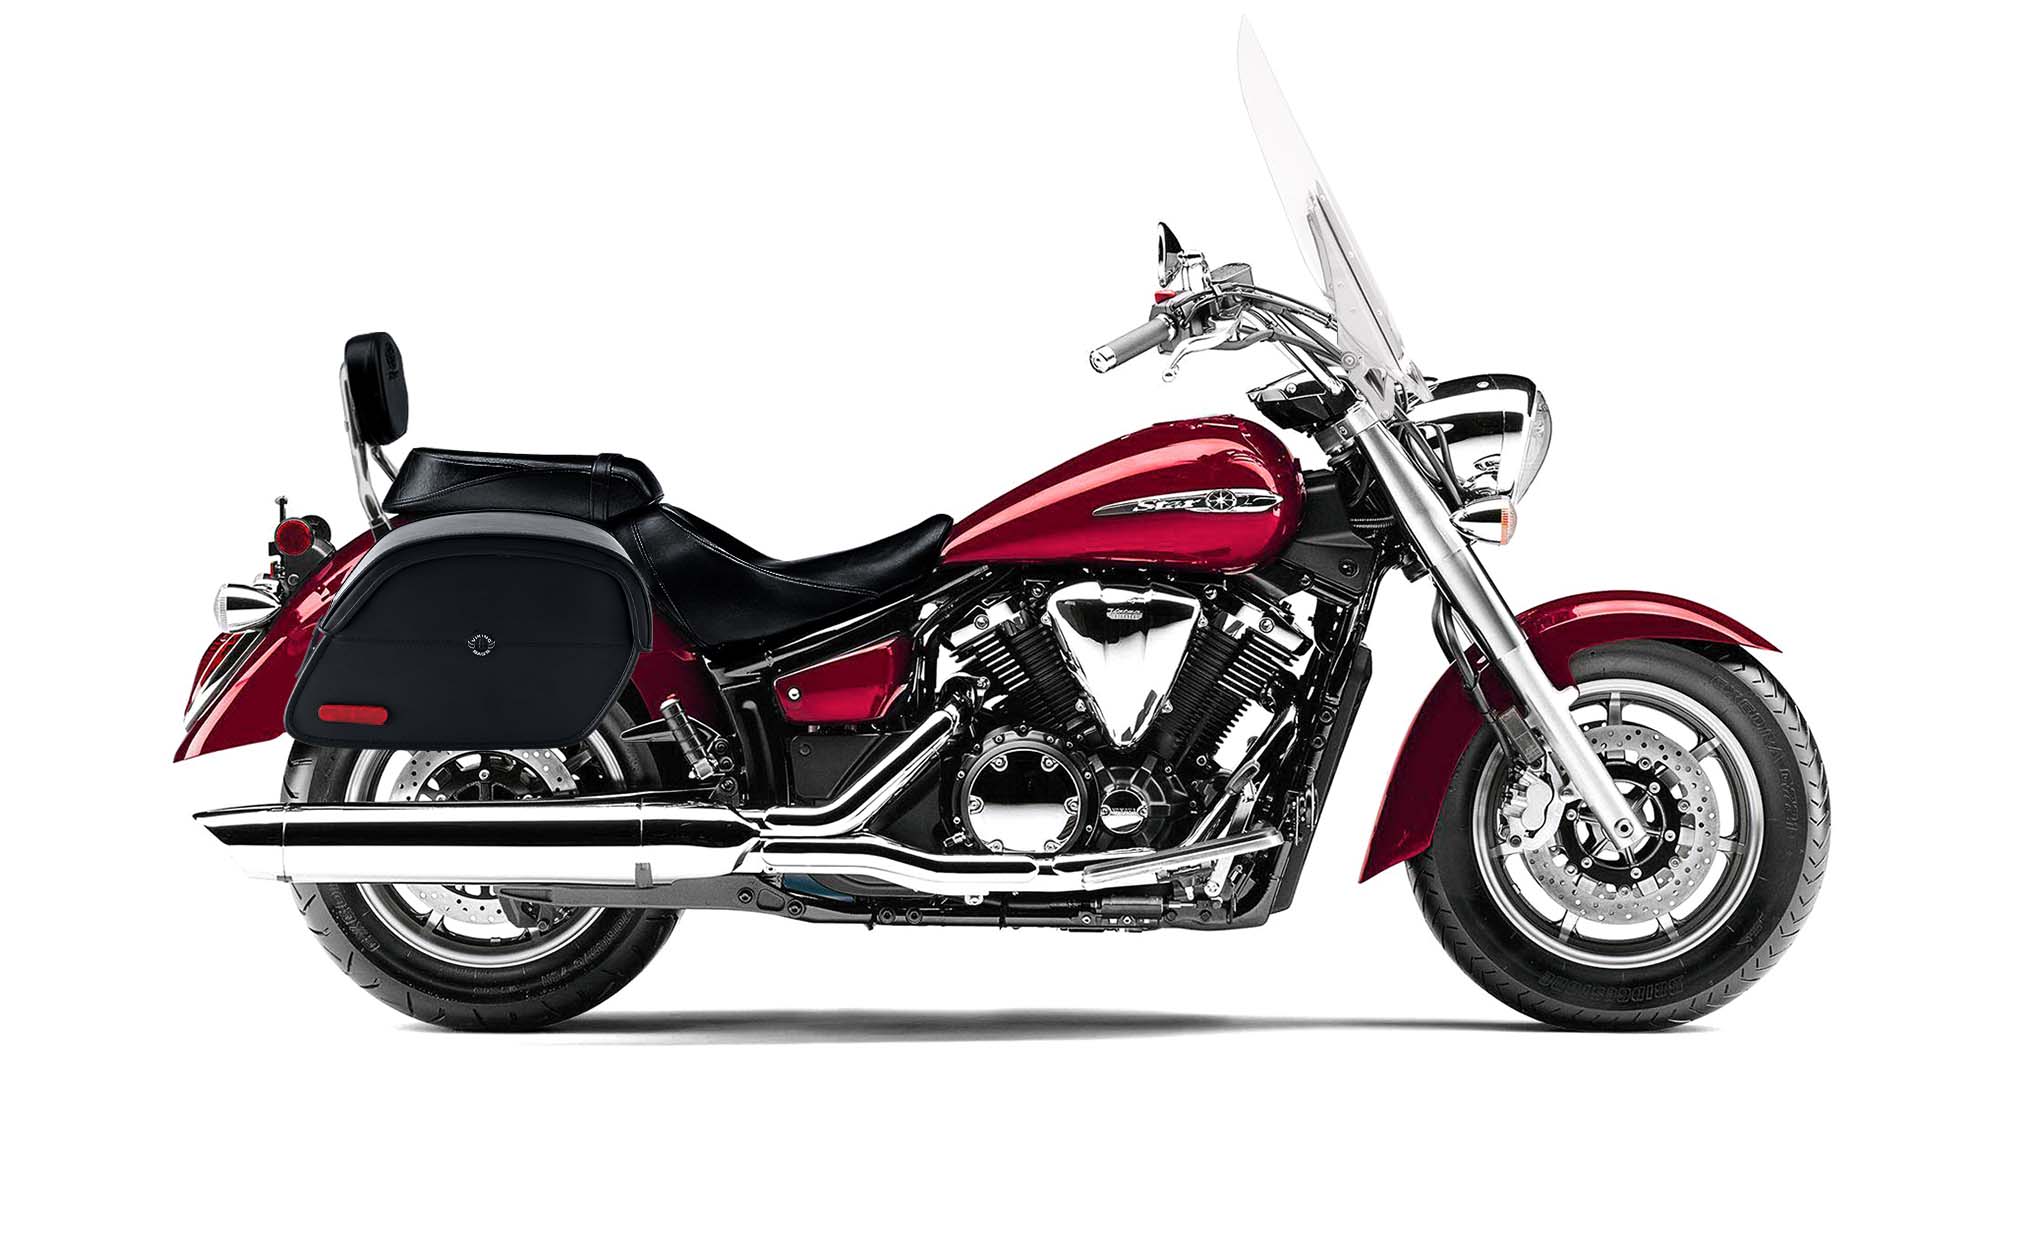 Viking California Large Yamaha V Star 1300 Tourer Leather Motorcycle Saddlebags on Bike Photo @expand